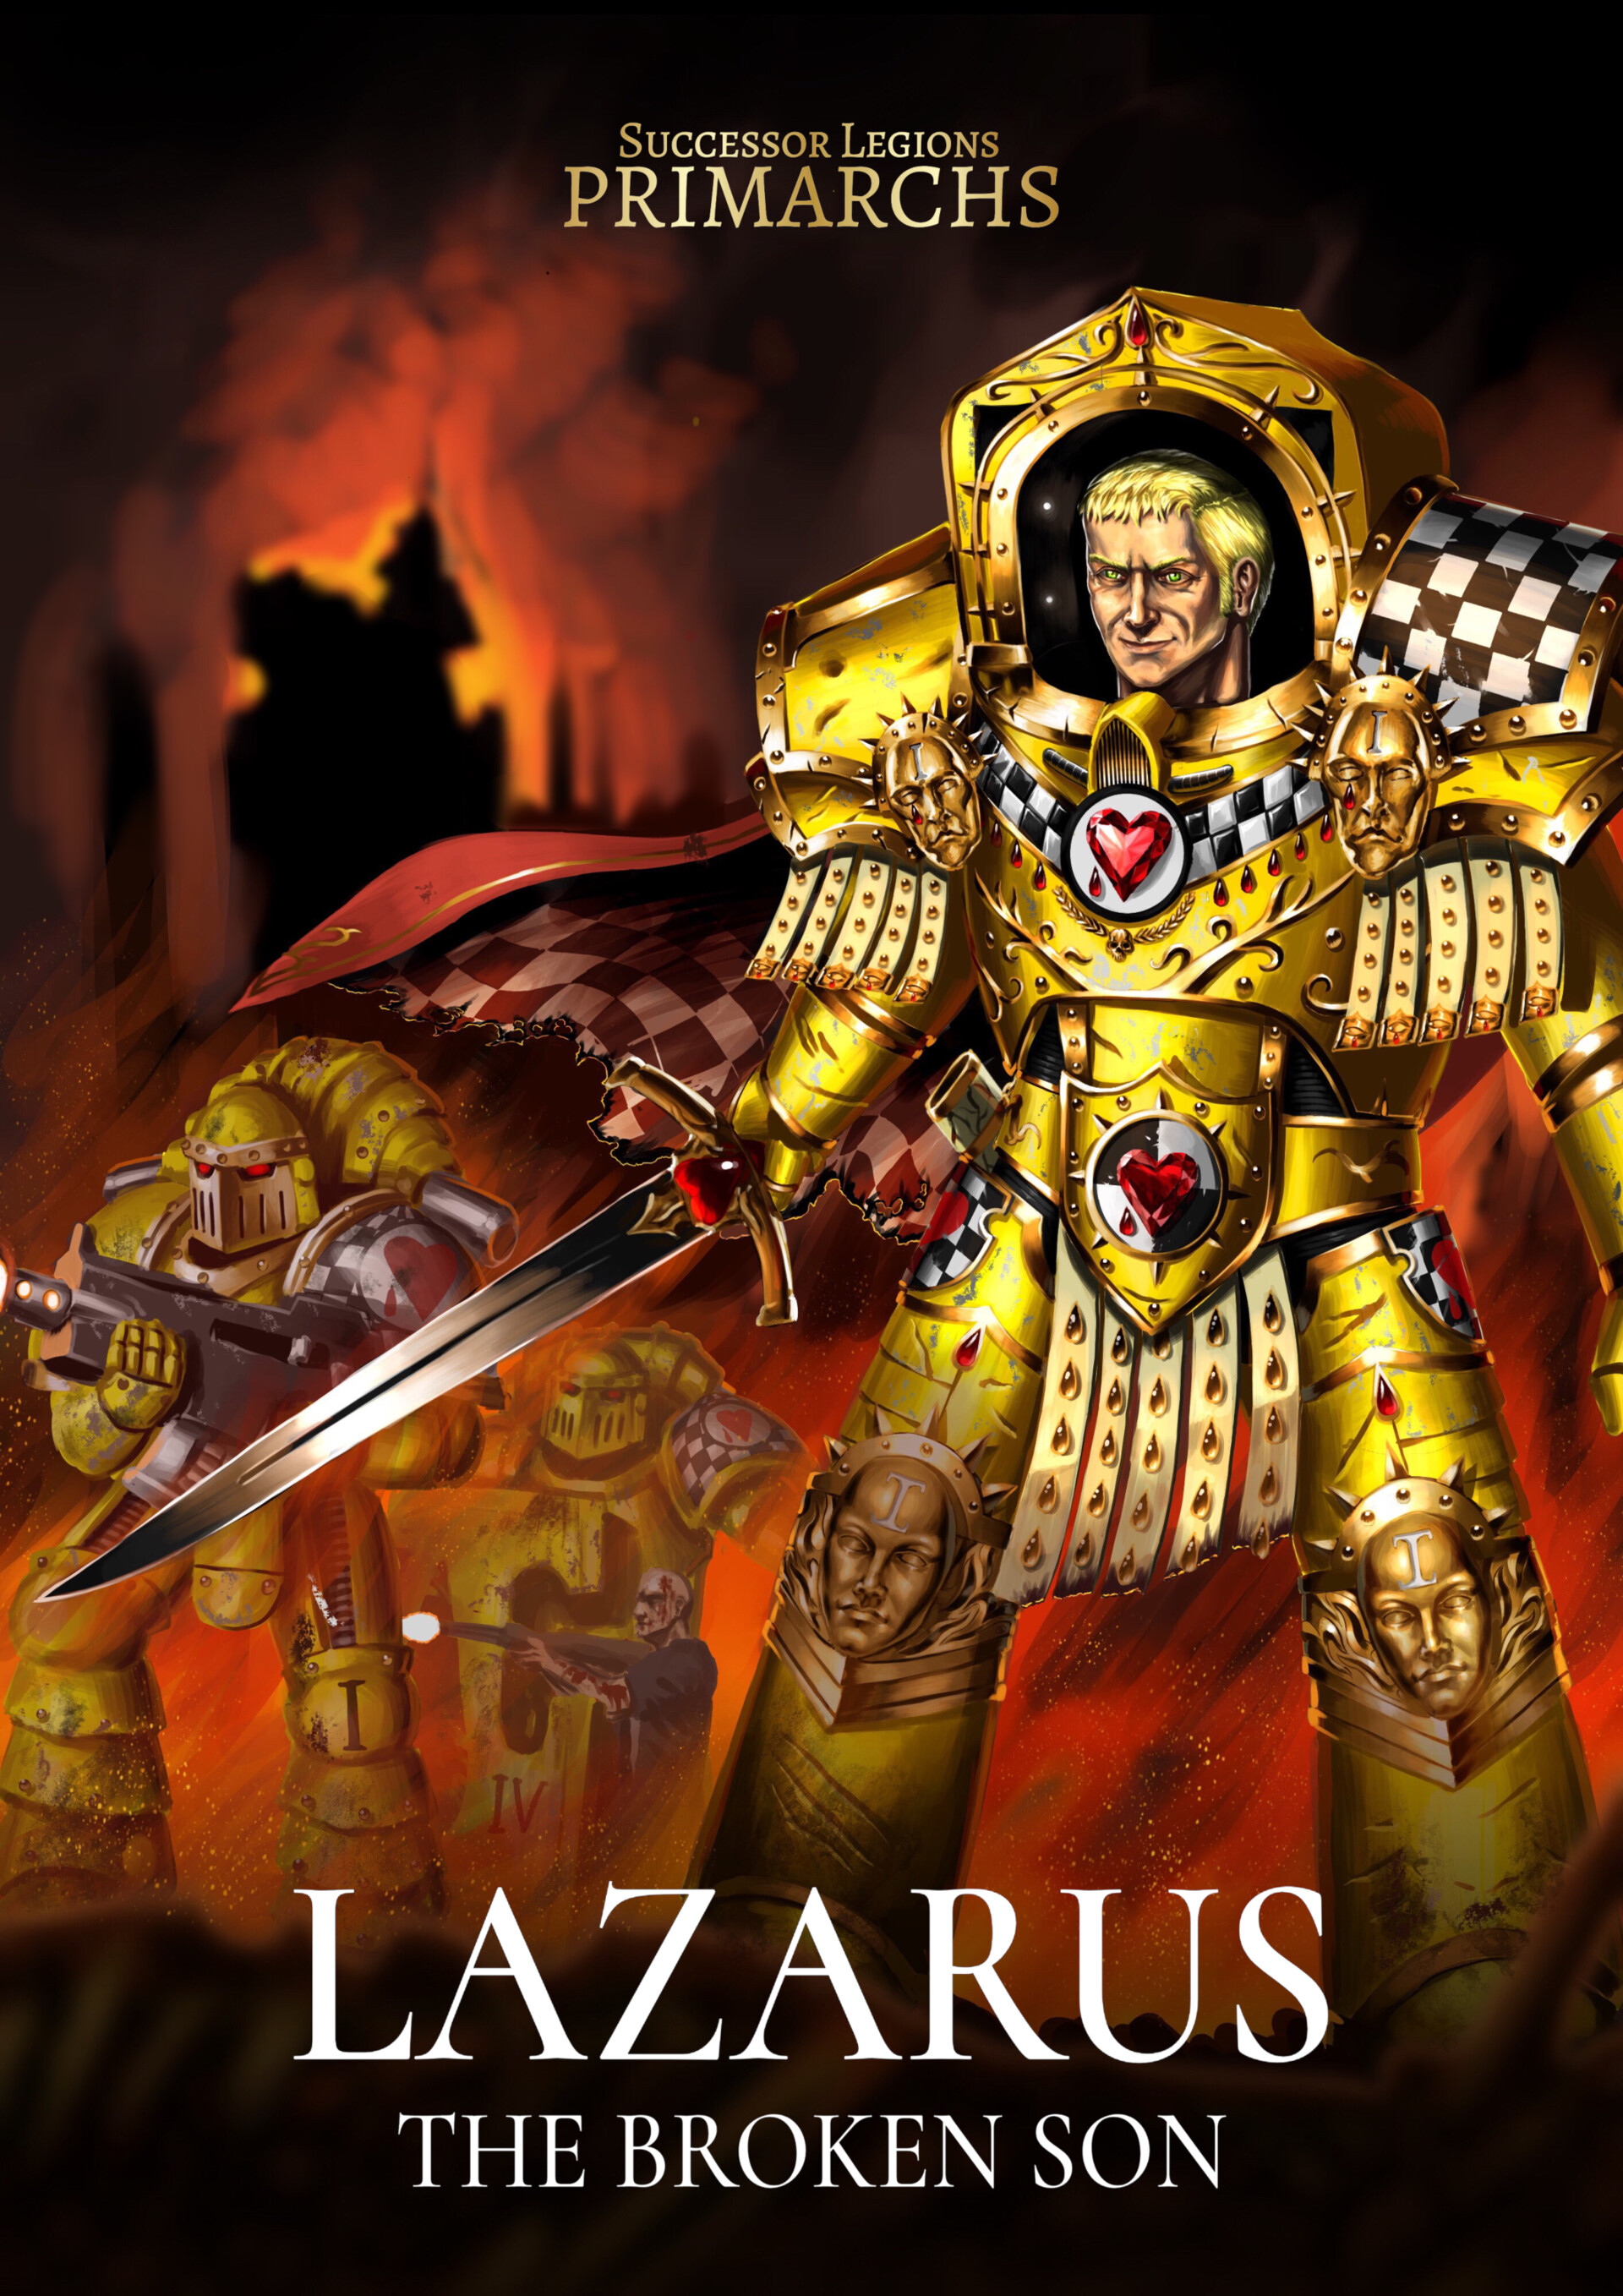 ArtStation Lazarus Primarch of the Lamenters Book Cover